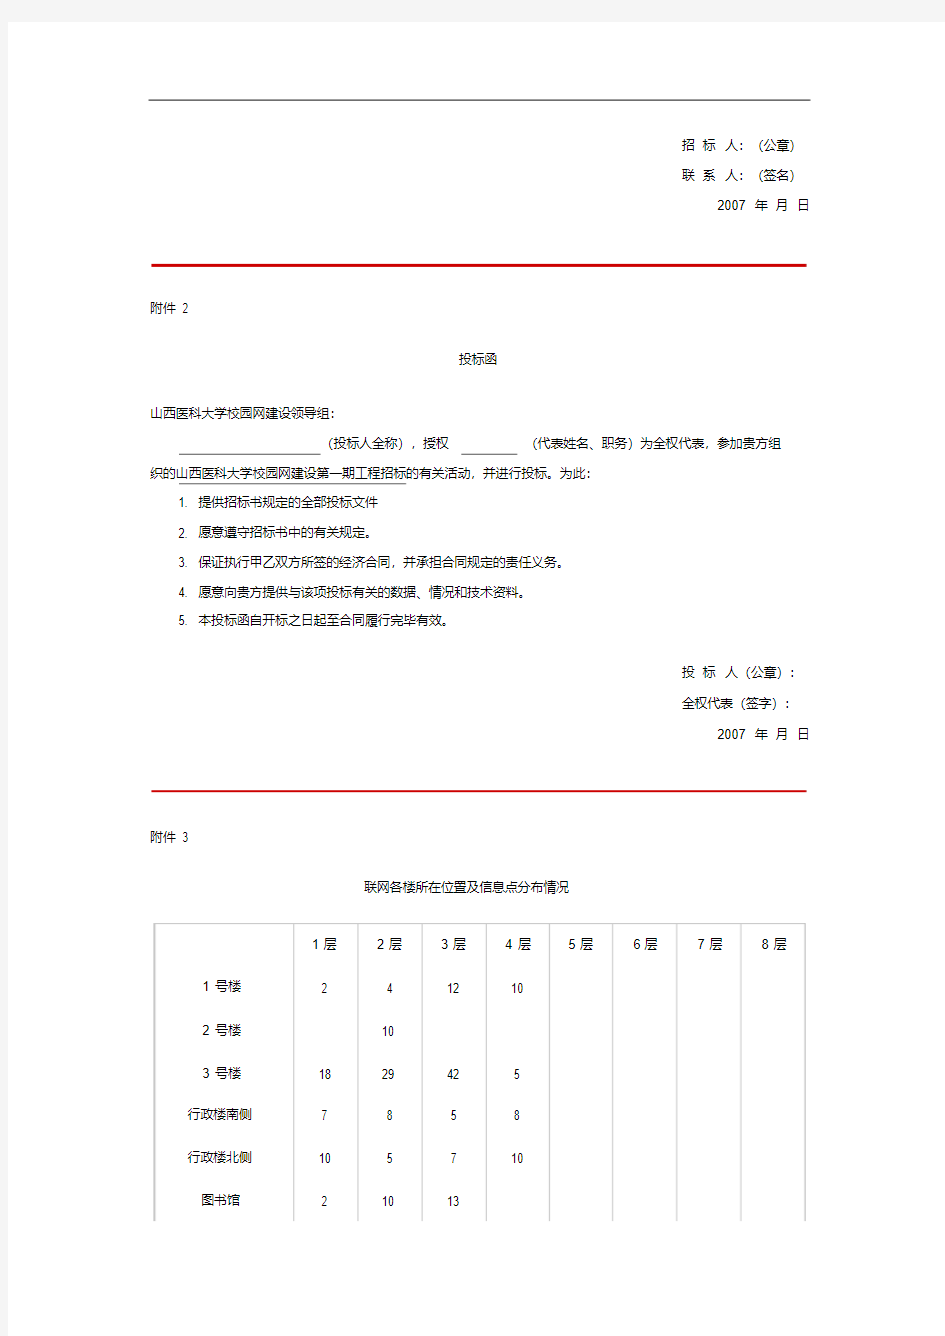 山西医科大学校园网招标公告.pdf